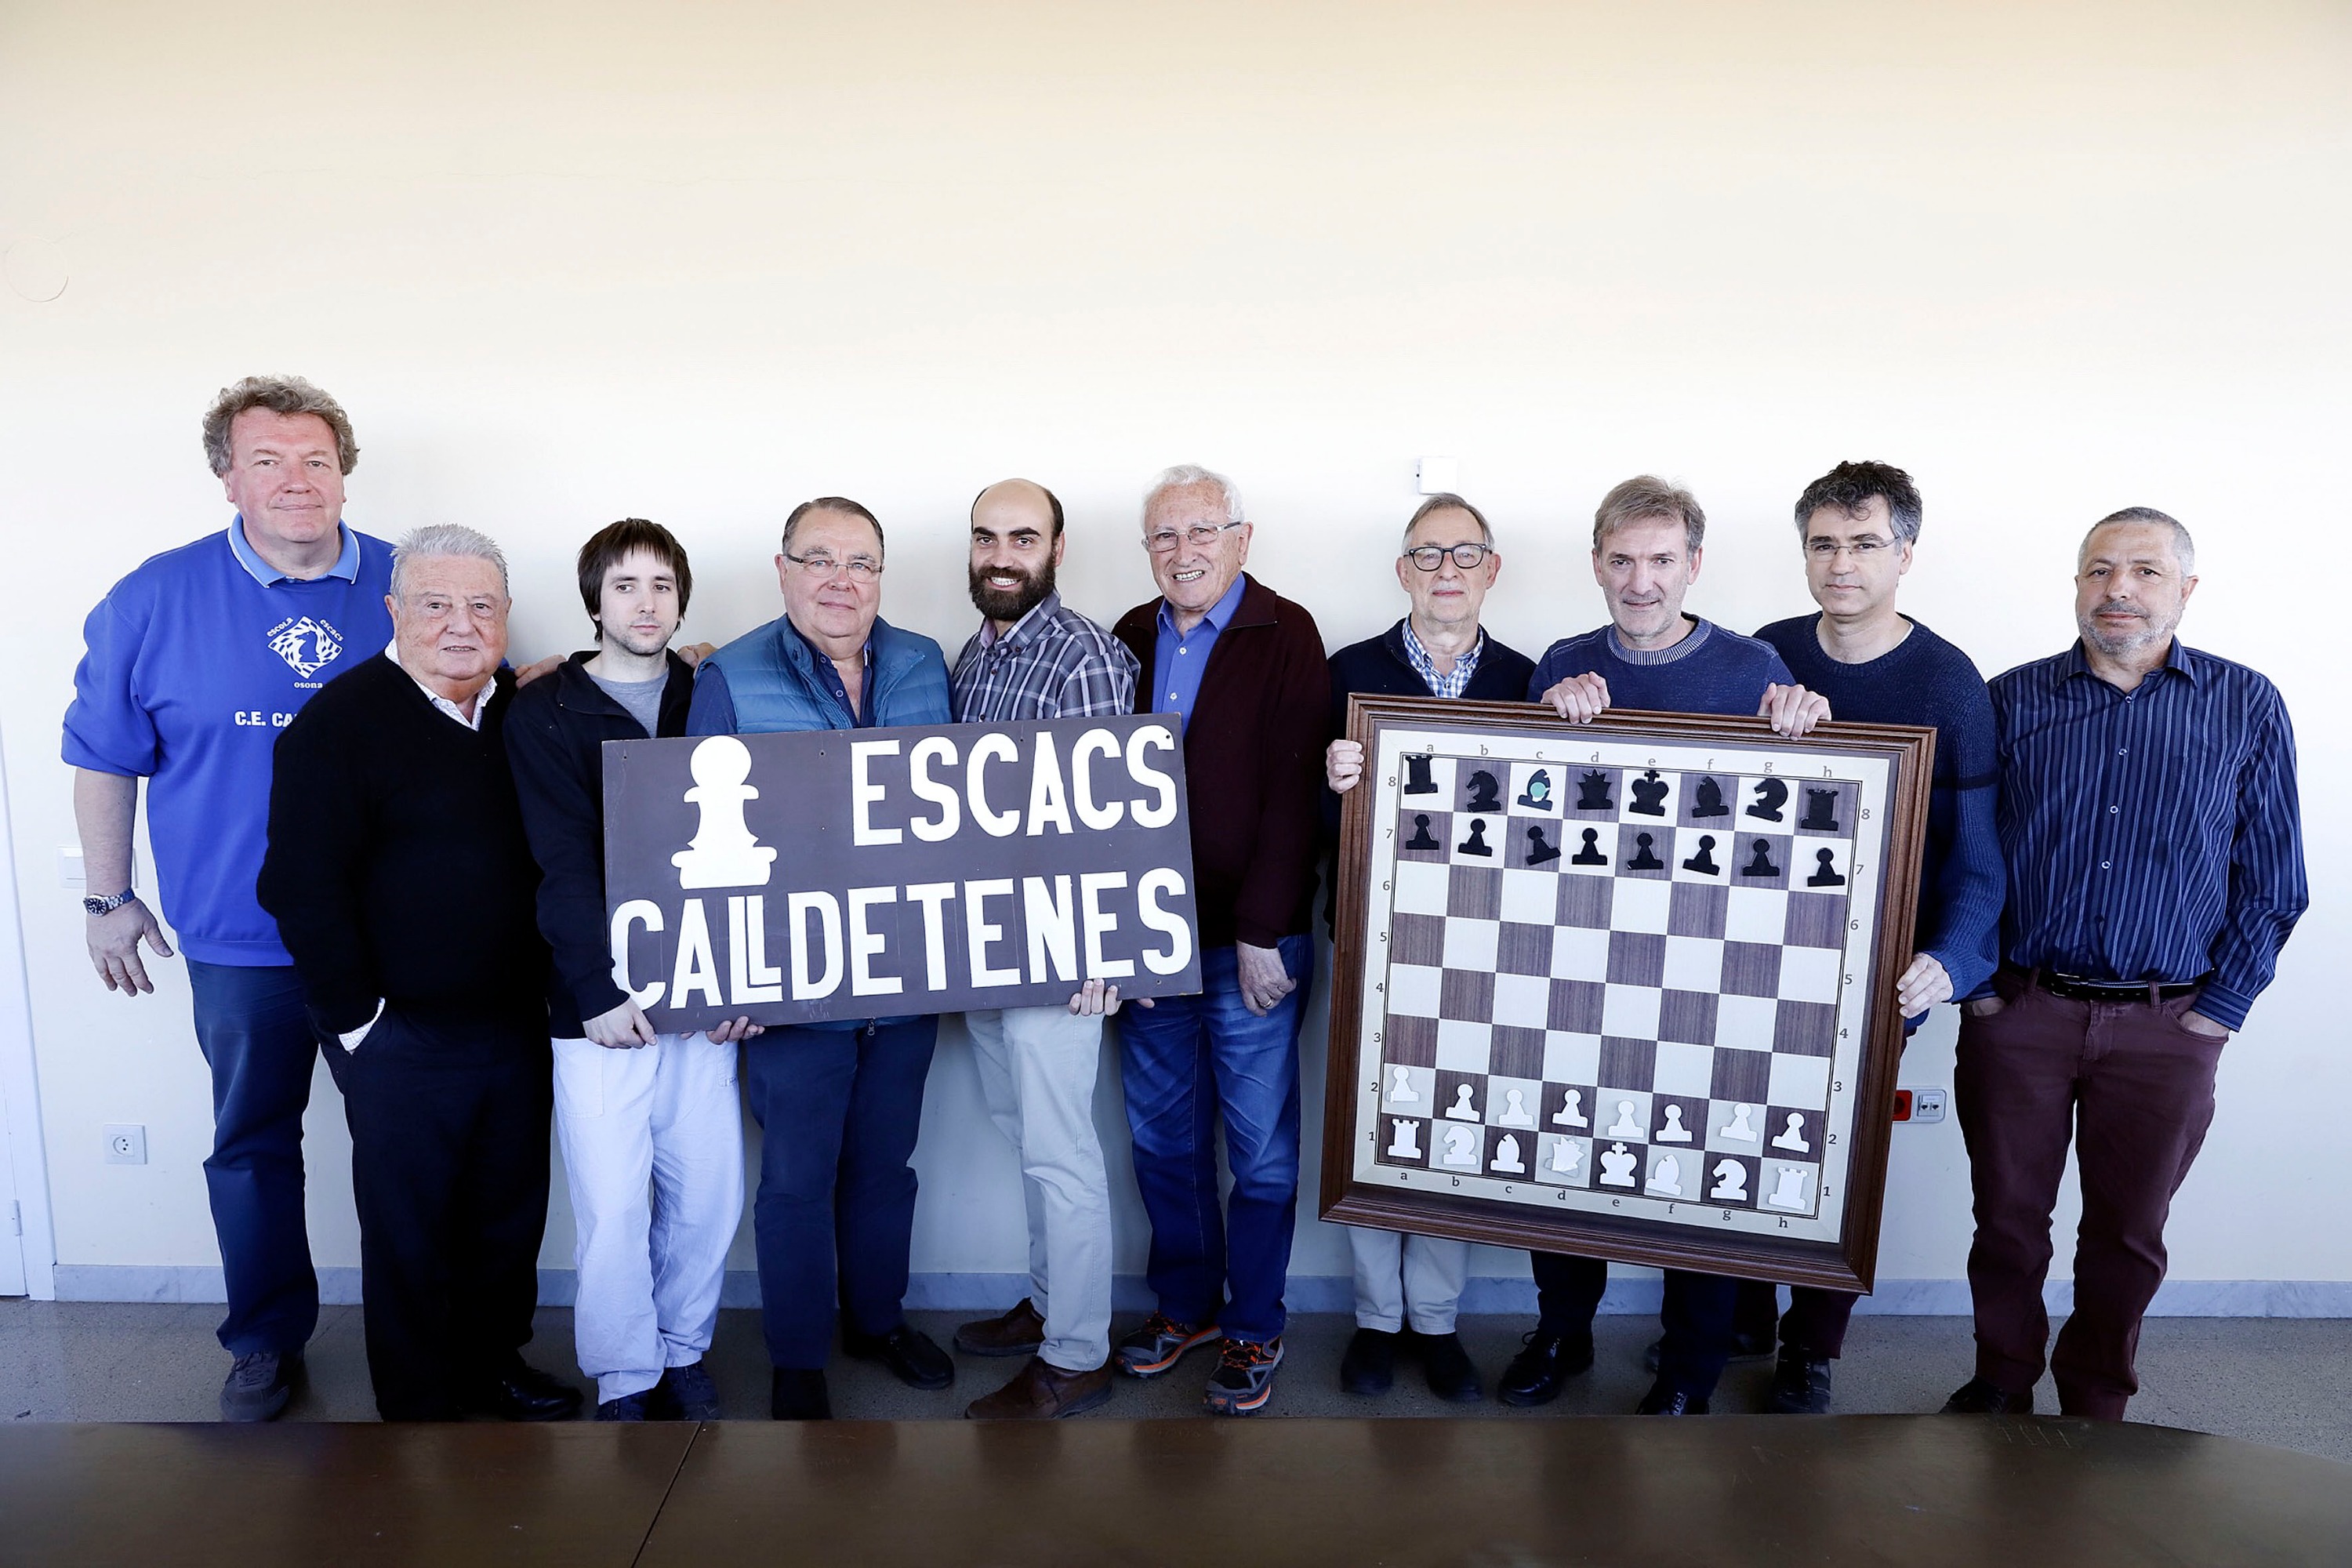 Integrants del Club Escacs Calldetenes